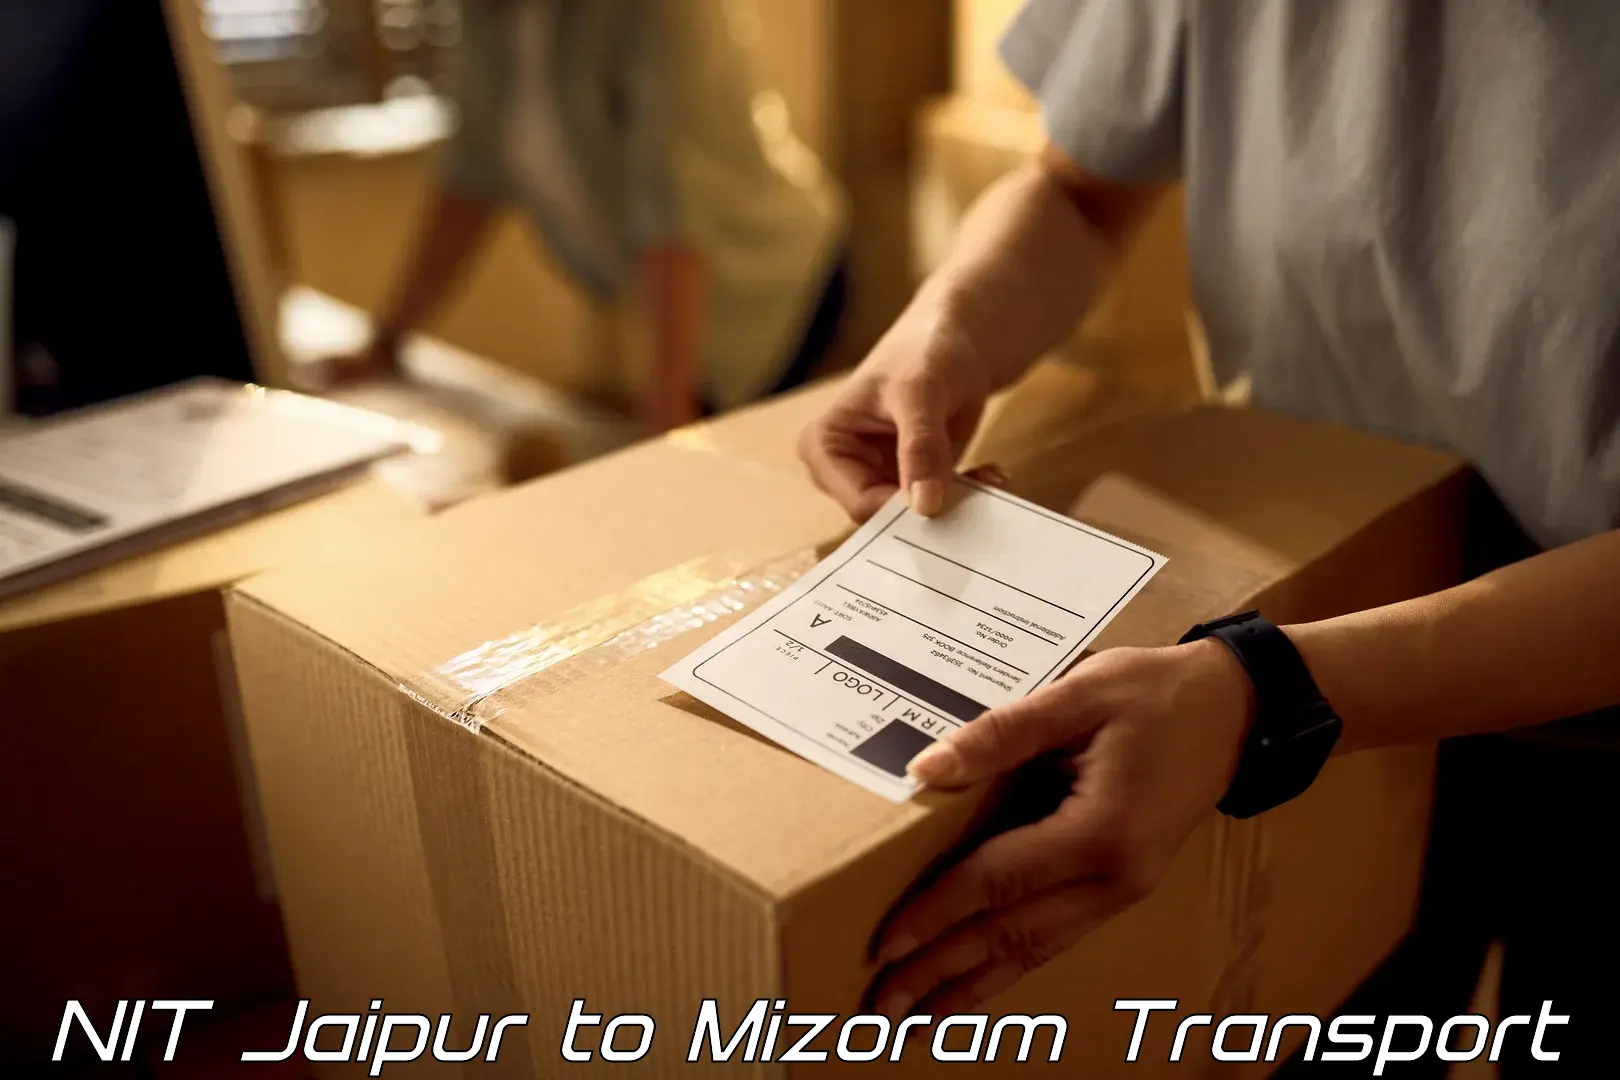 Express transport services NIT Jaipur to Serchhip